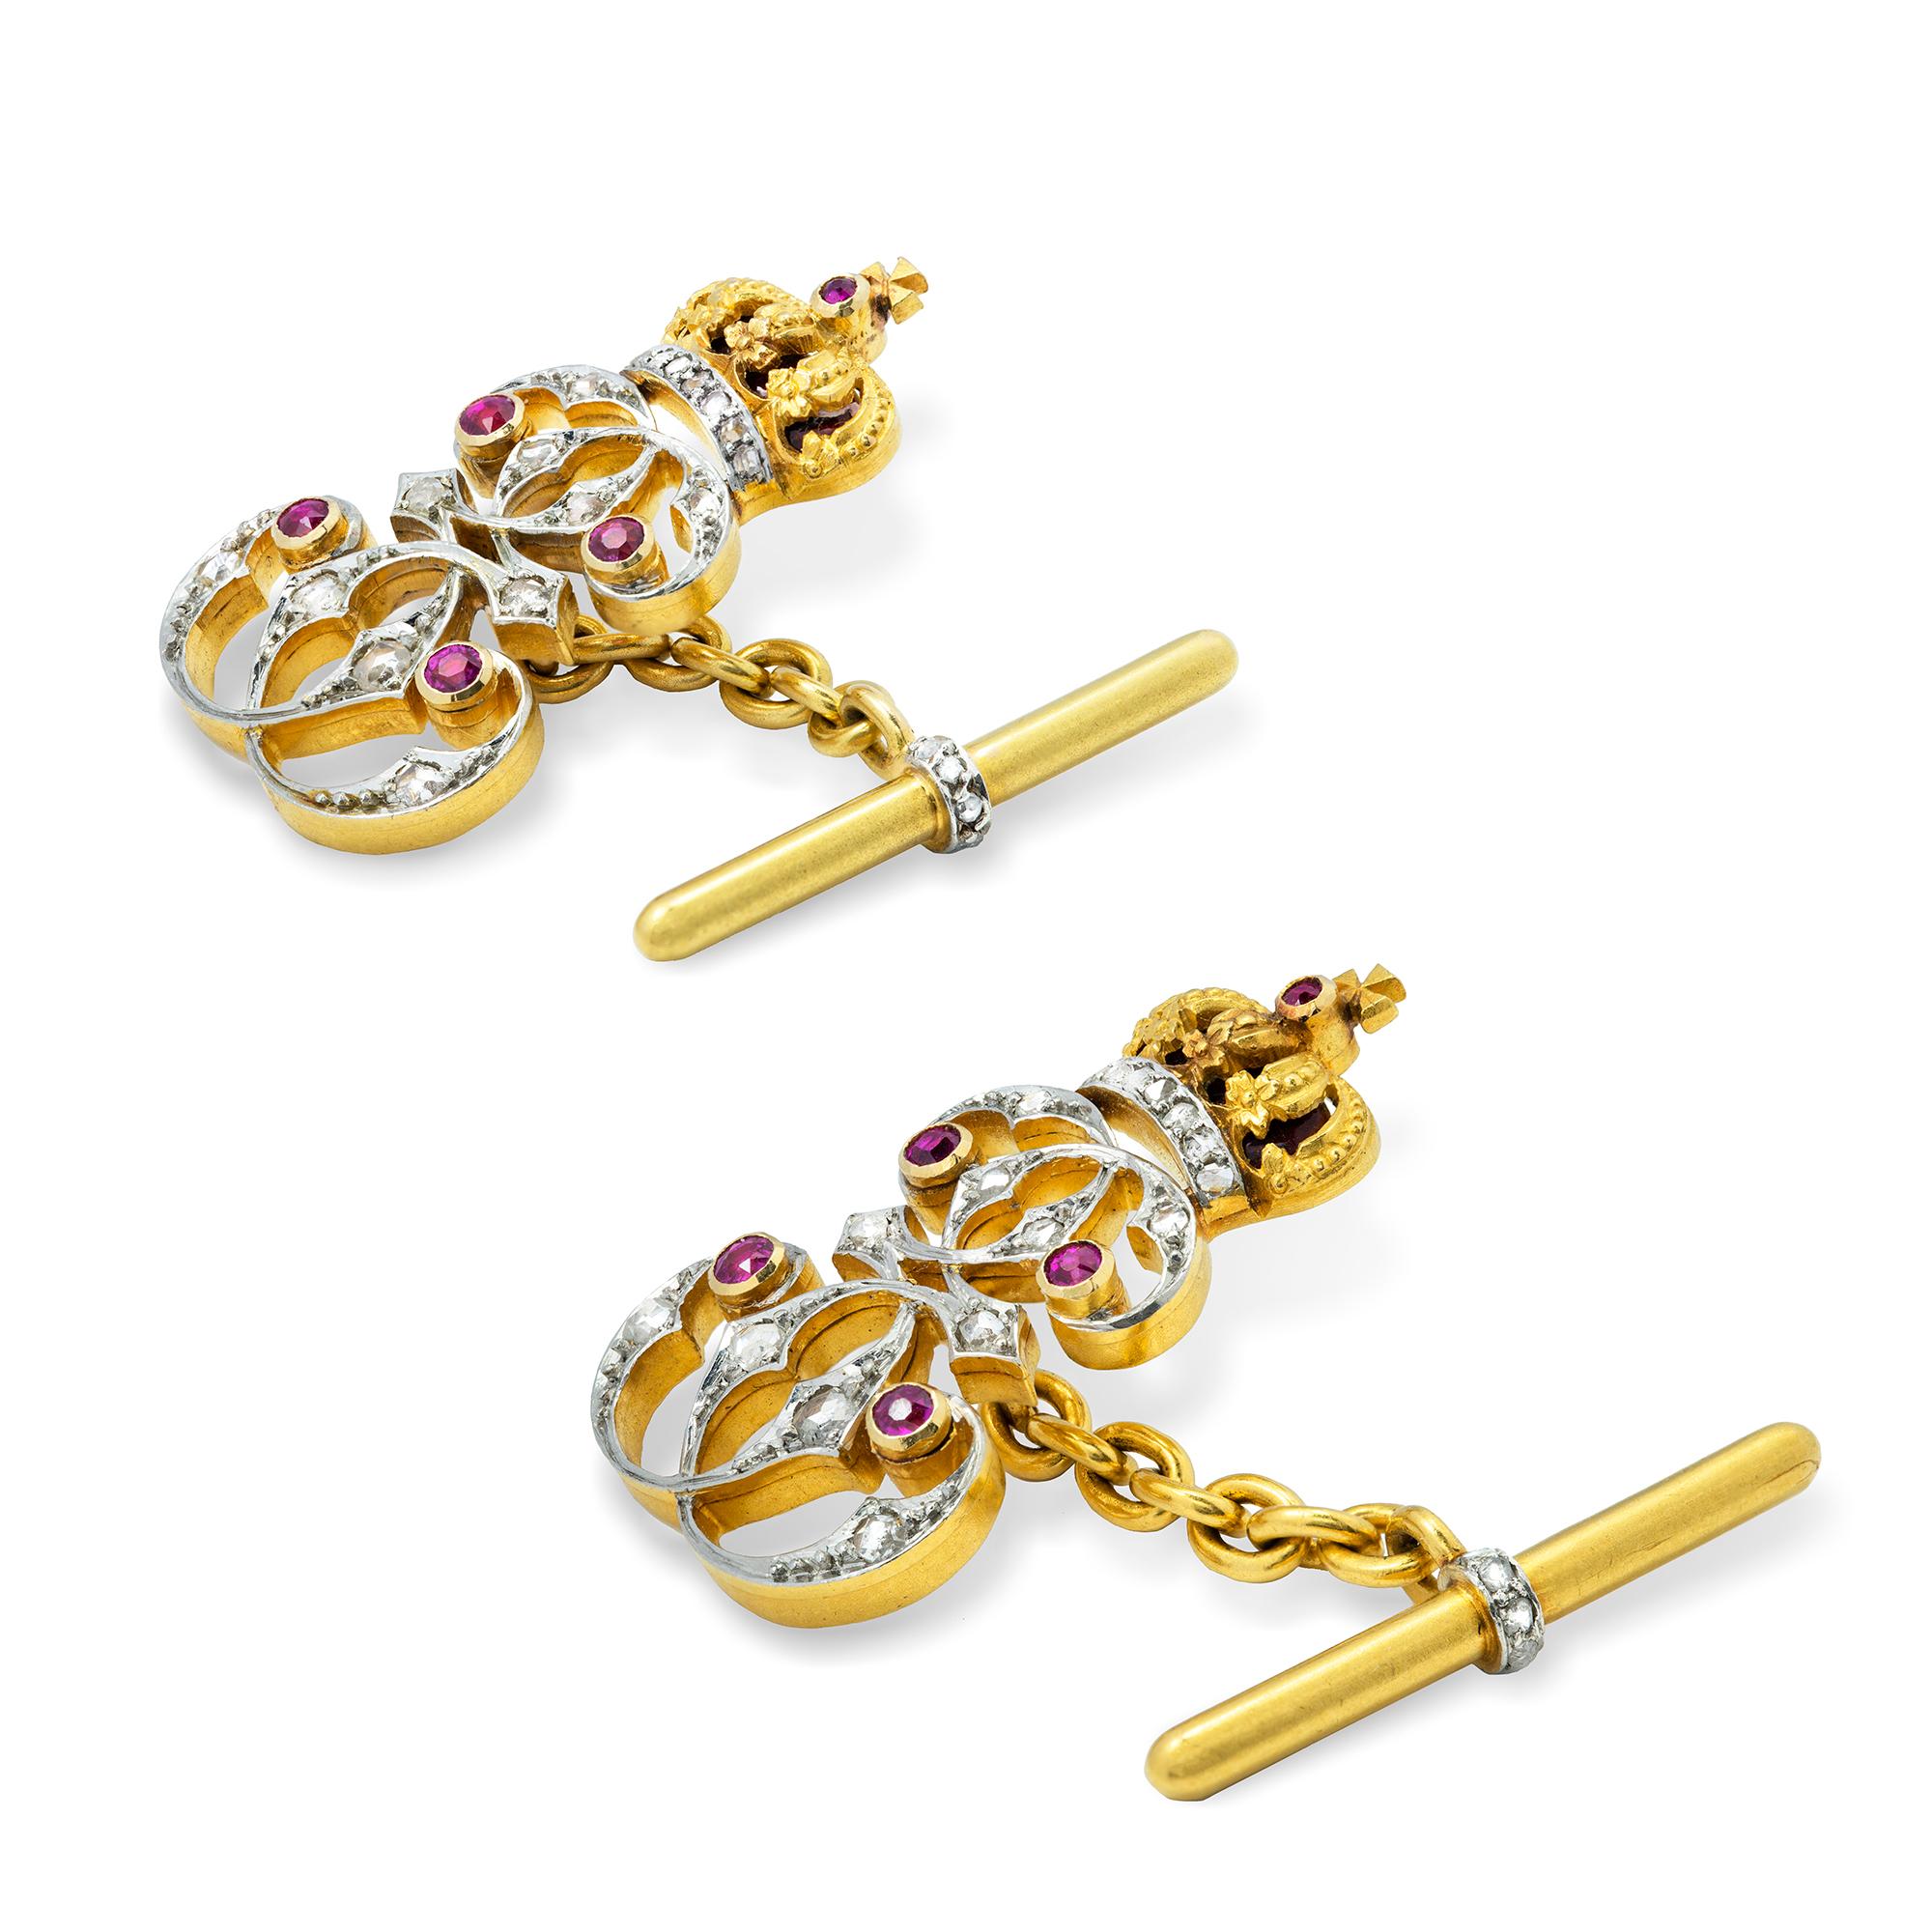 Ein Paar Präsentationsmanschettenknöpfe der Königin Elisabeth von Rumänien, das Ziffernzeichen der Königin, besetzt mit Diamanten im Rosenschliff und Rubinen in Platin, mit roter Guilloche-Emaille auf der Krone, verbunden mit einer